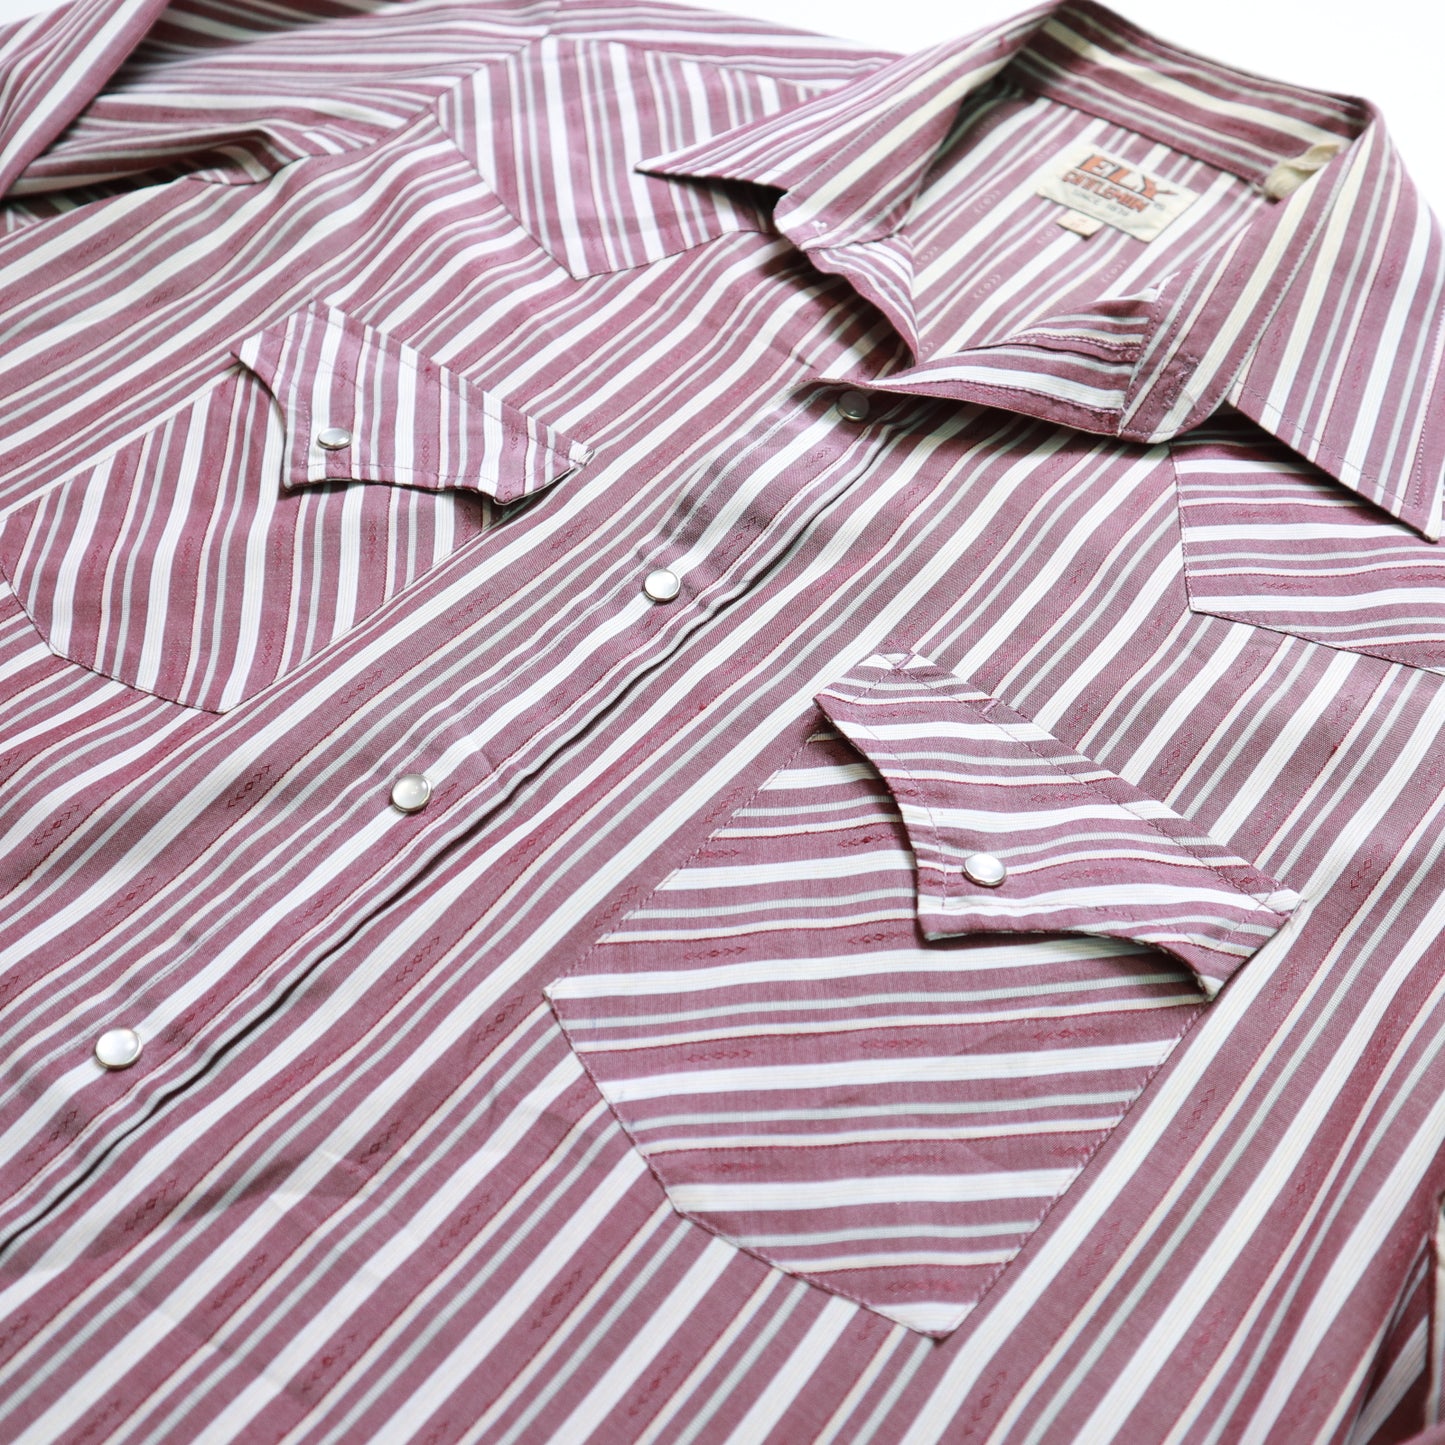 80-90年代 ELY Cattleman Western Shirt ピンクとパープルのストライプ ウエスタンシャツ Ranchwear ヴィンテージシャツ